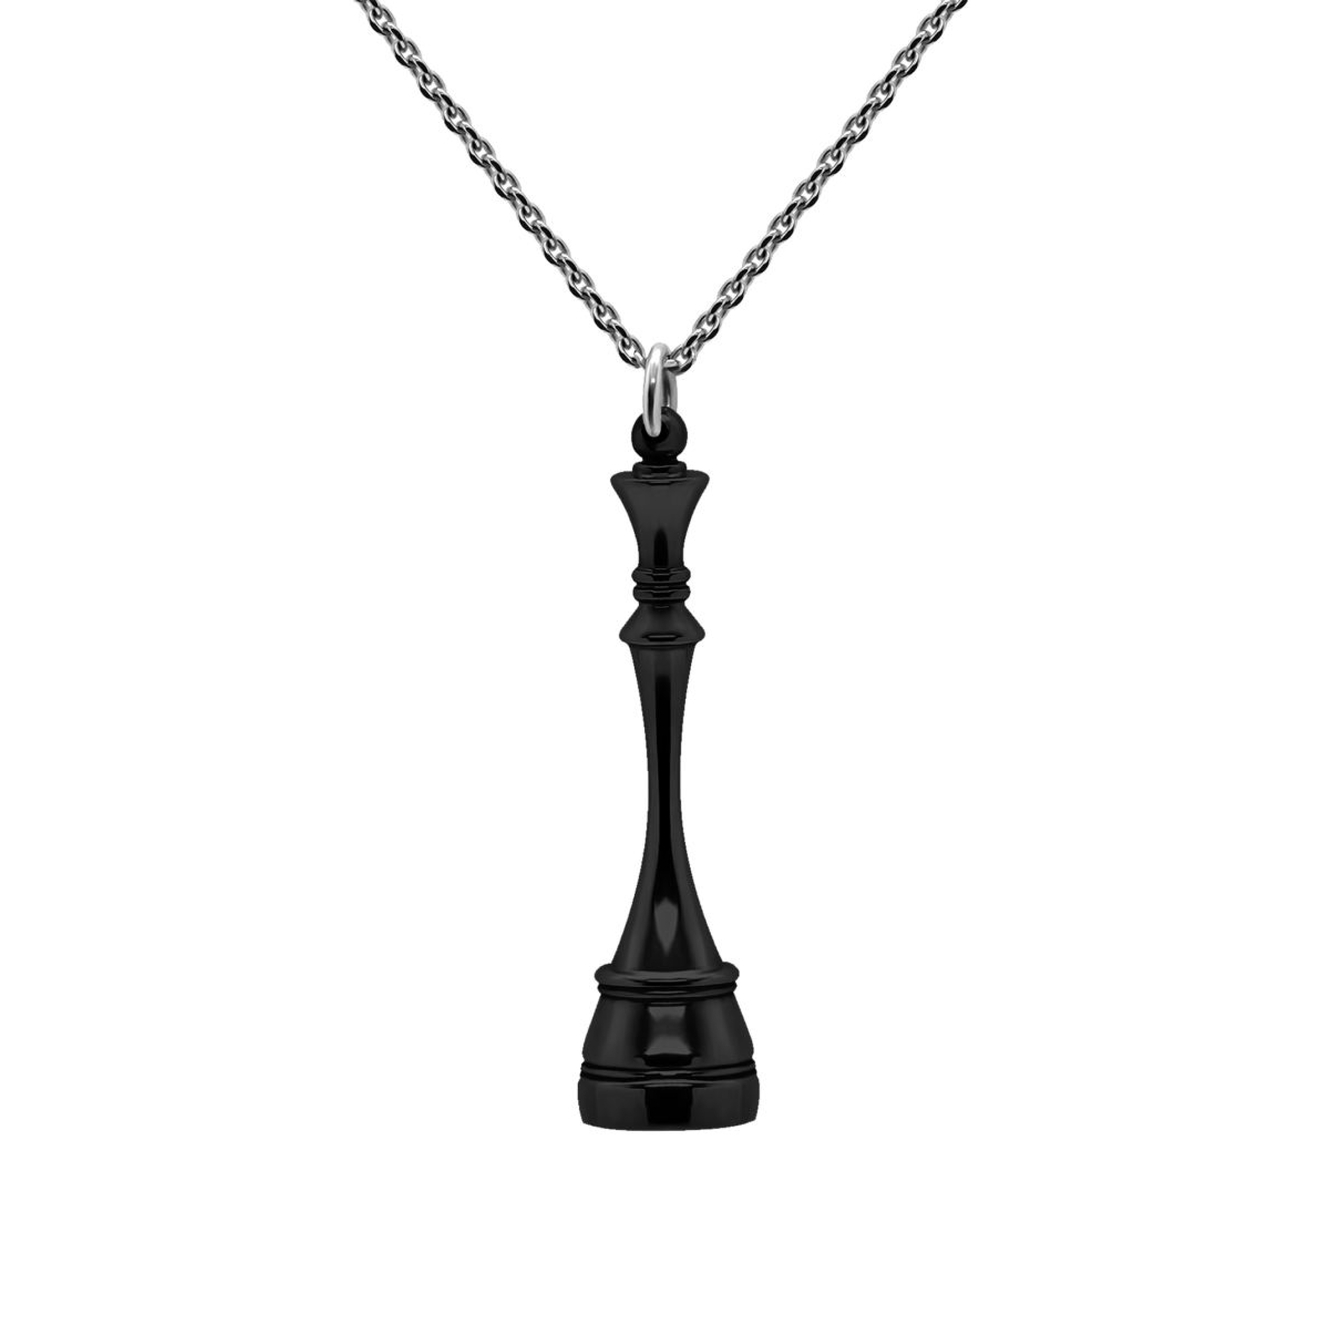 Prosto Jewelry Подвеска Королева Black из серебра prosto jewlry подвеска слон black из серебра